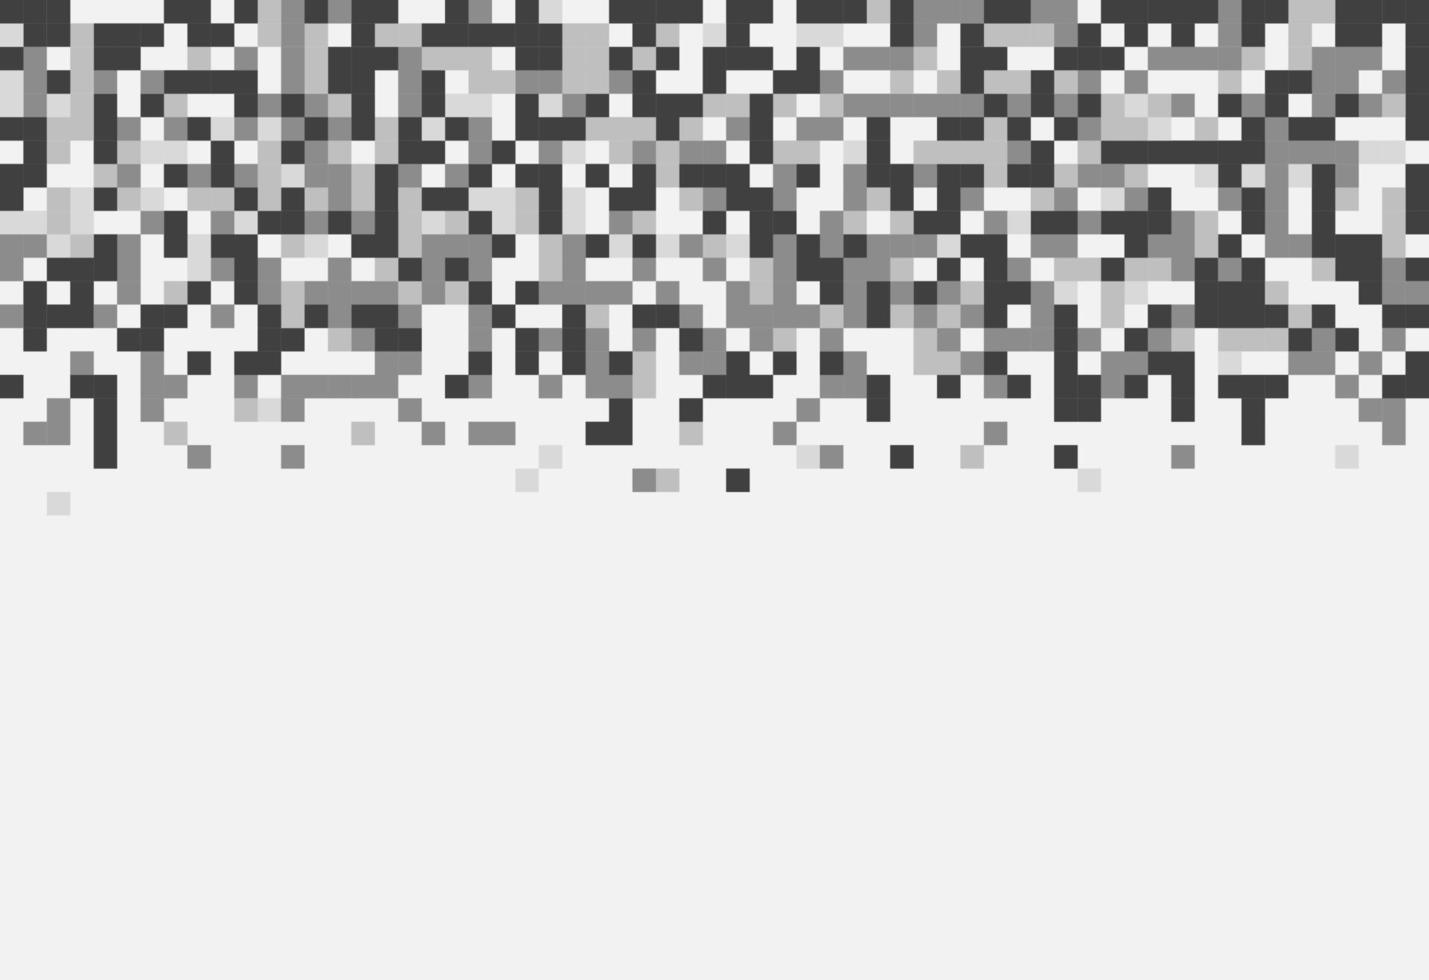 modello astratto di pixel mosaico geometrico. sfondo bianco e nero. disegno vettoriale del tuo modello di banner manifesto volantino grafico